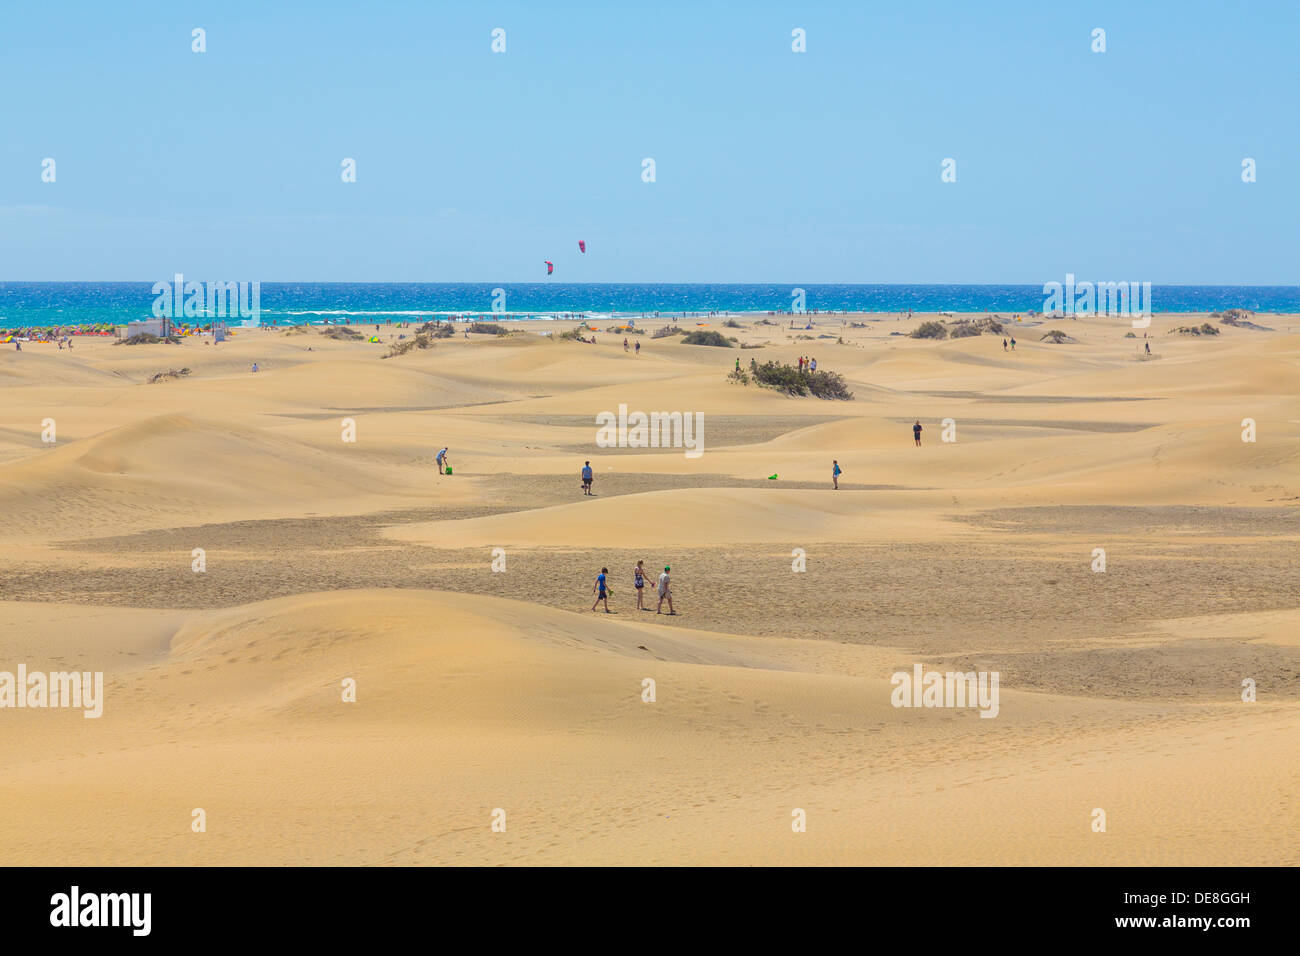 Spain, Las Palmas, People at Dunes of Maspalomas Stock Photo - Alamy